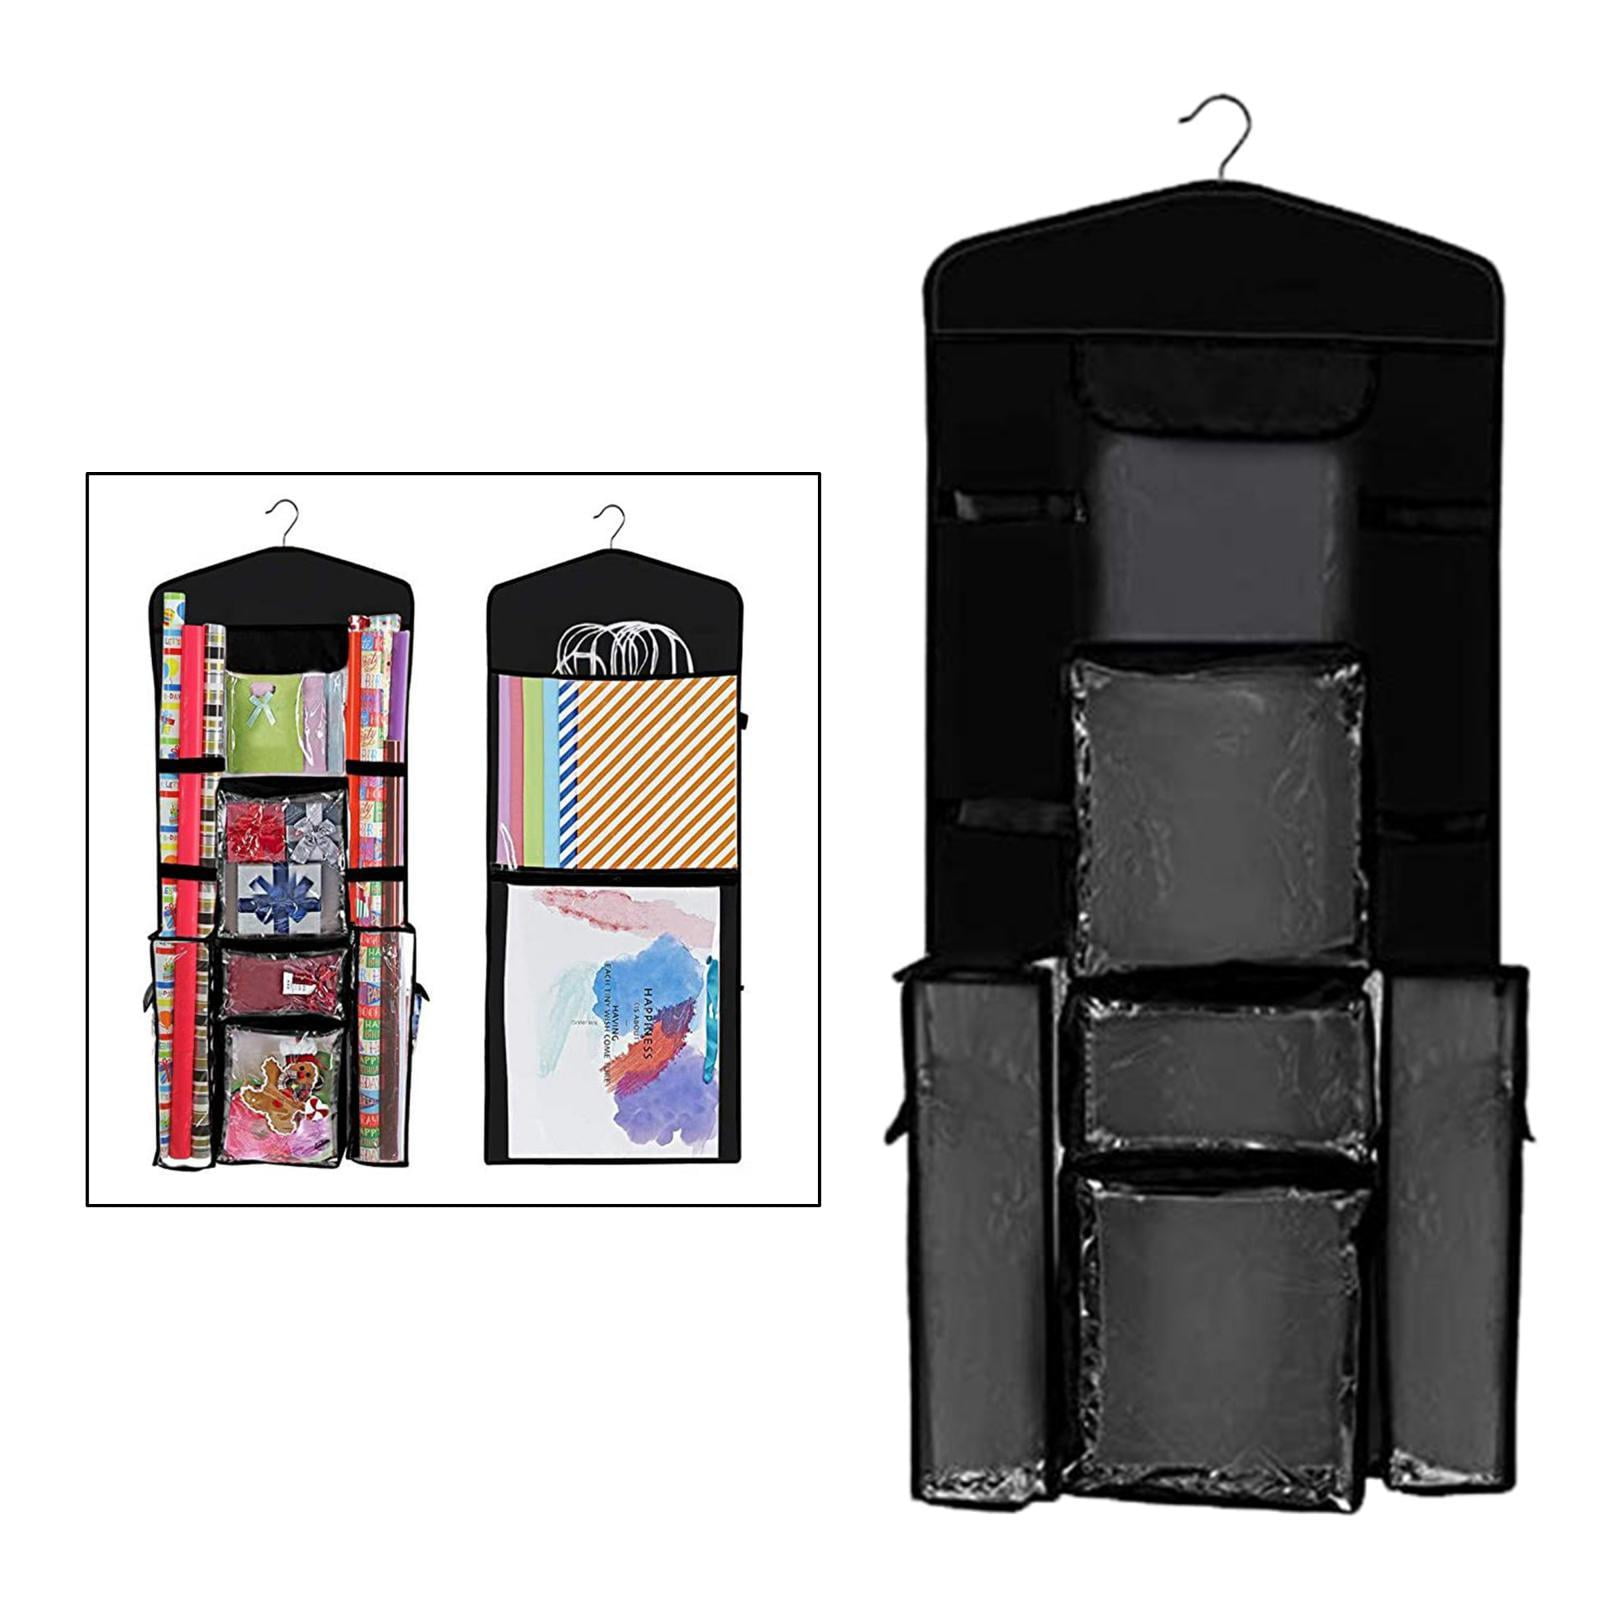  Freeote Hanging Gift Wrap Storage Organizer, 40x16